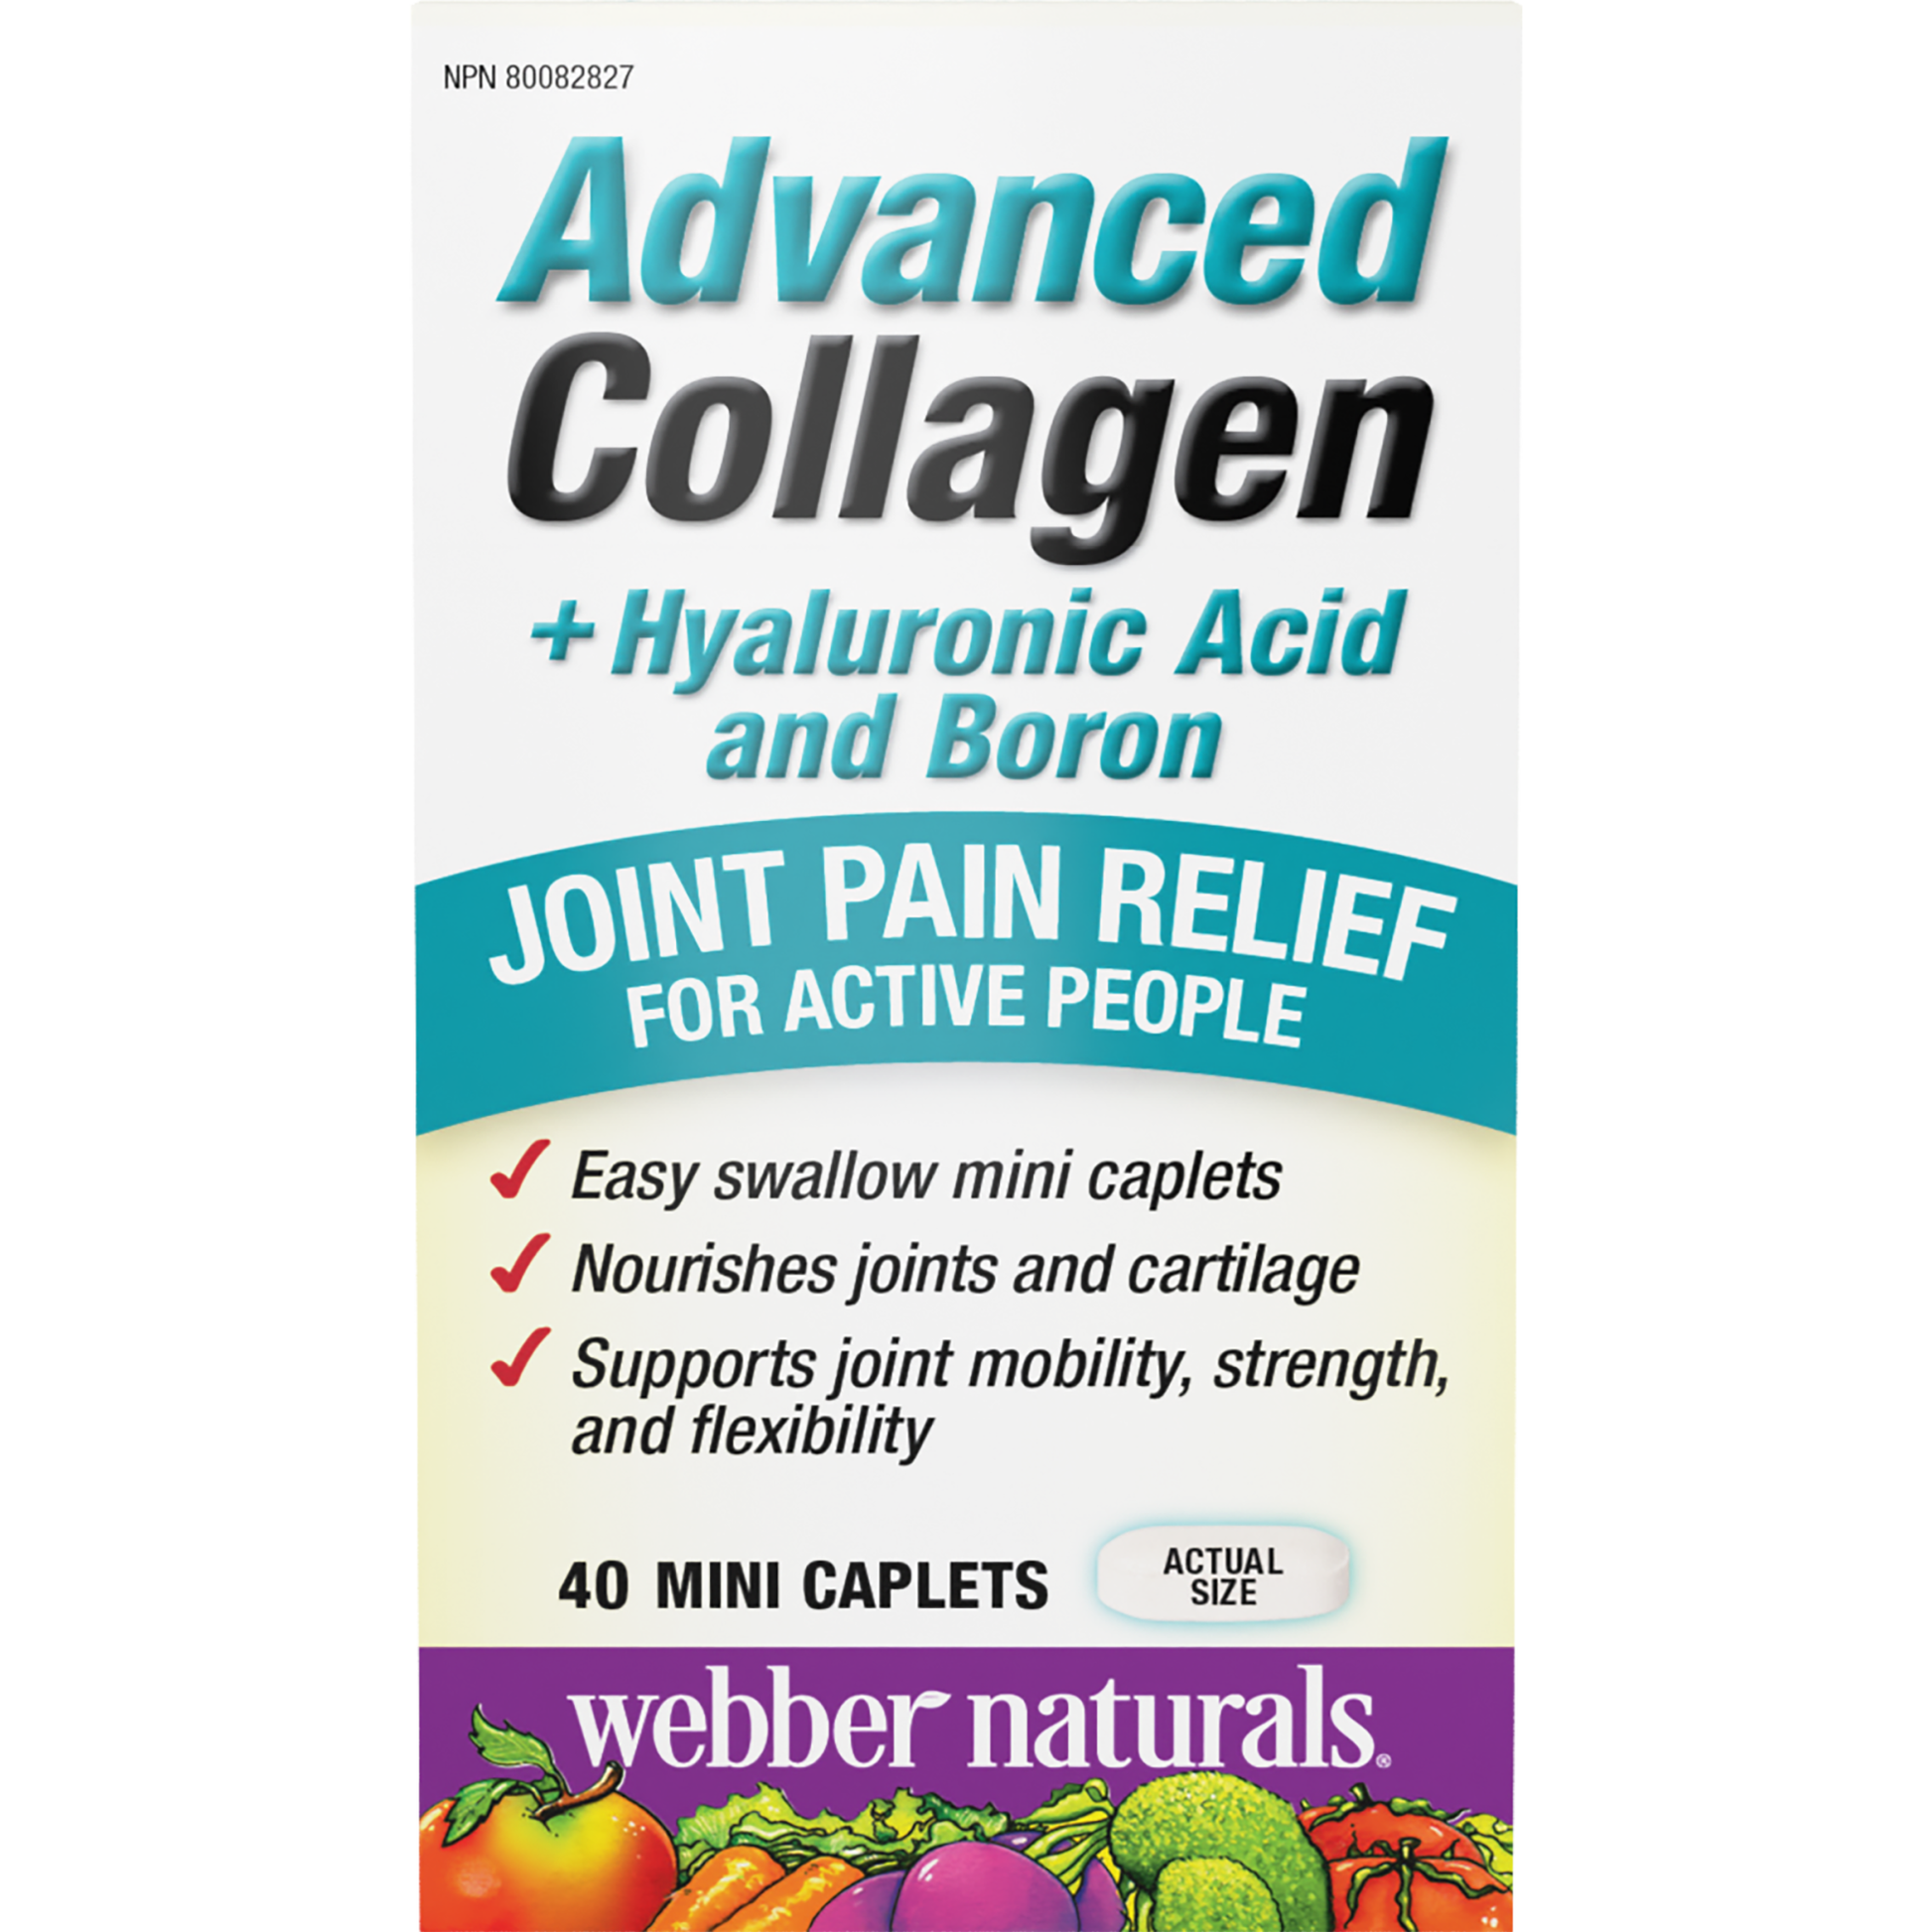 Advanced Collagen + Hyaluronic Acid and Boron for Webber Naturals|v|hi-res|WN3661